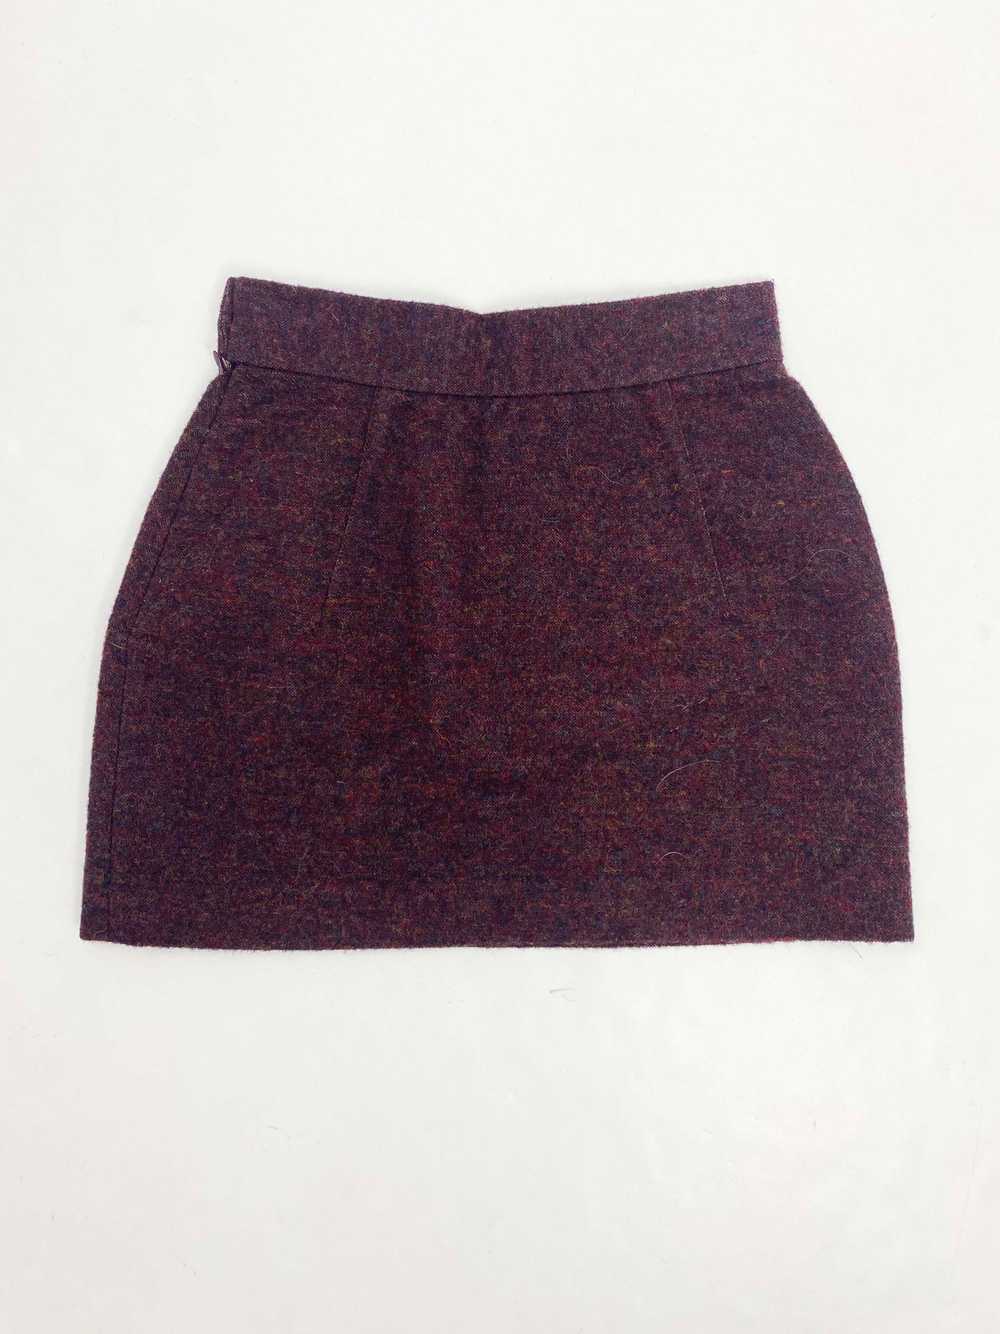 Vivienne Westwood F/W 1999 mini skirt - image 3